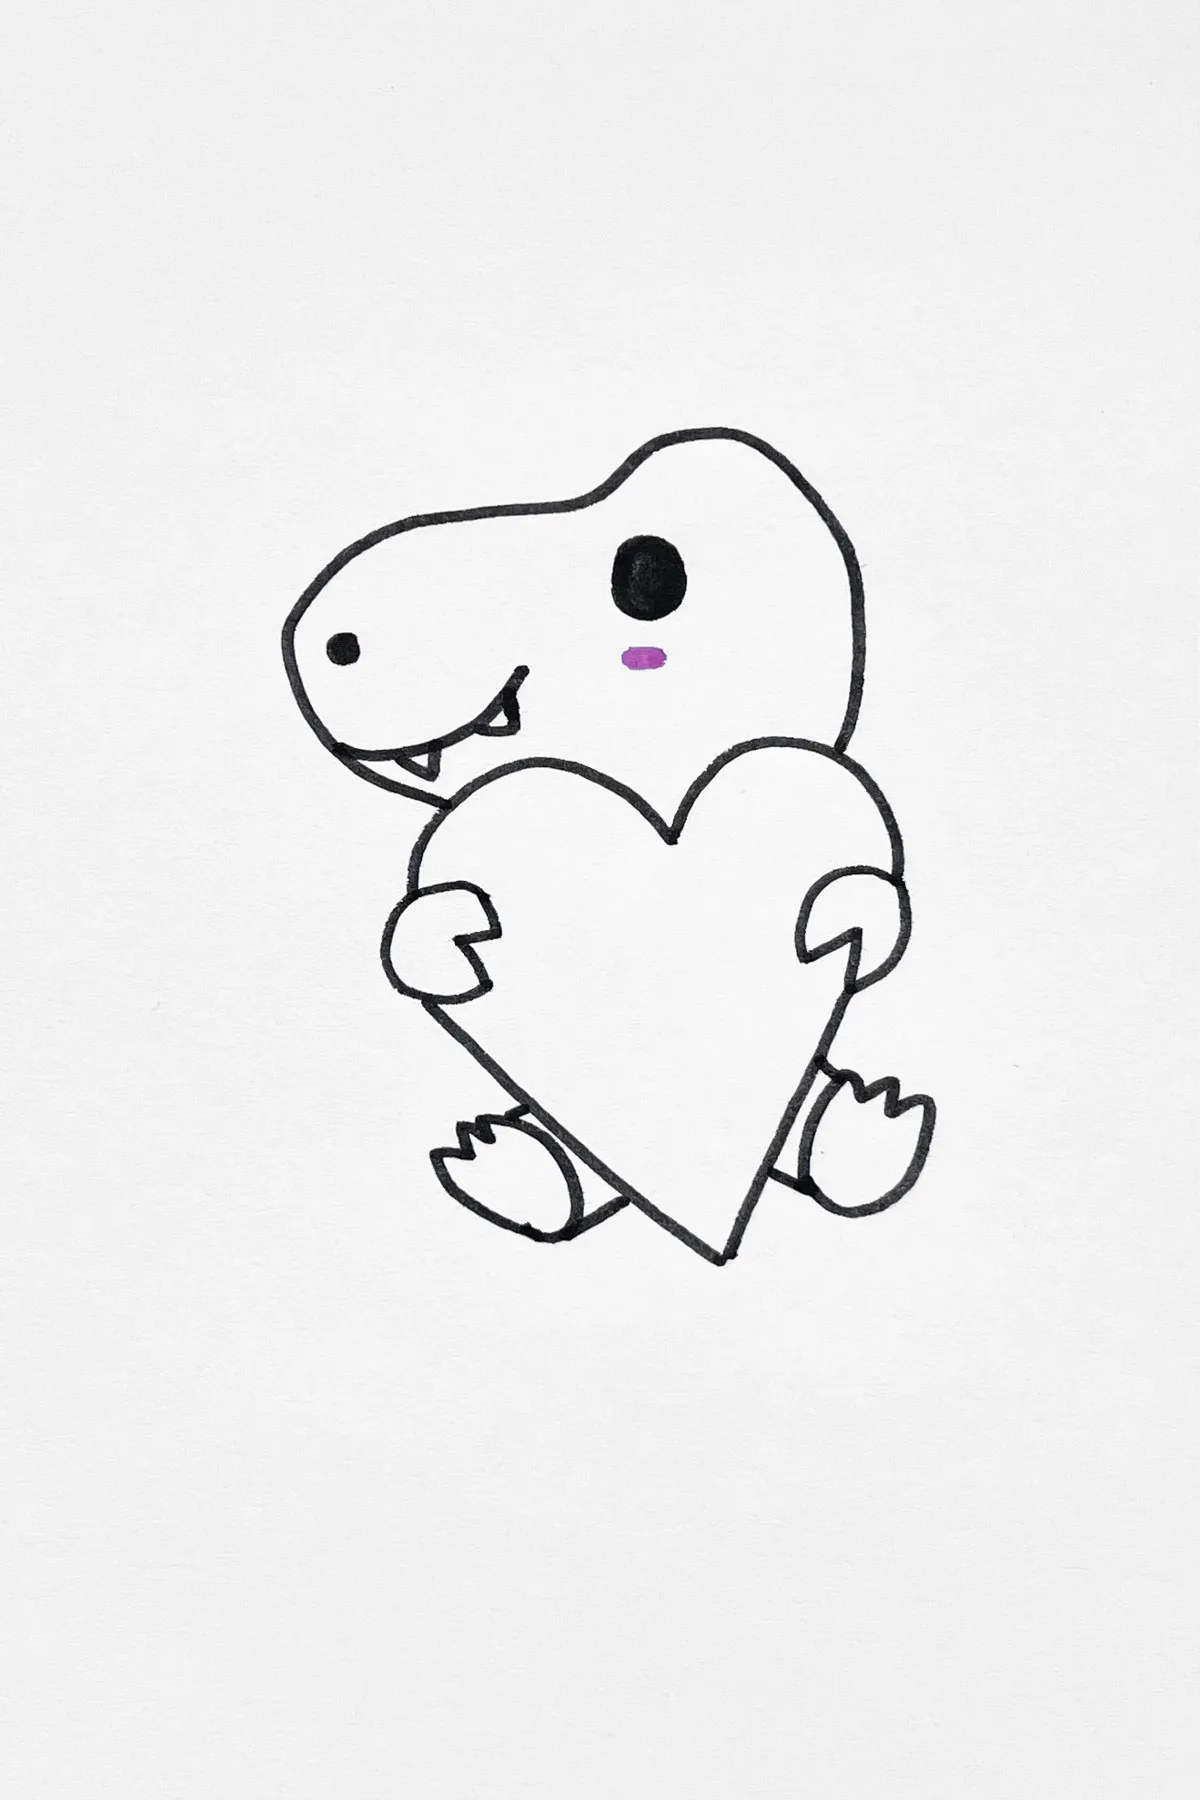  Lovely Little Dinosaur drawing